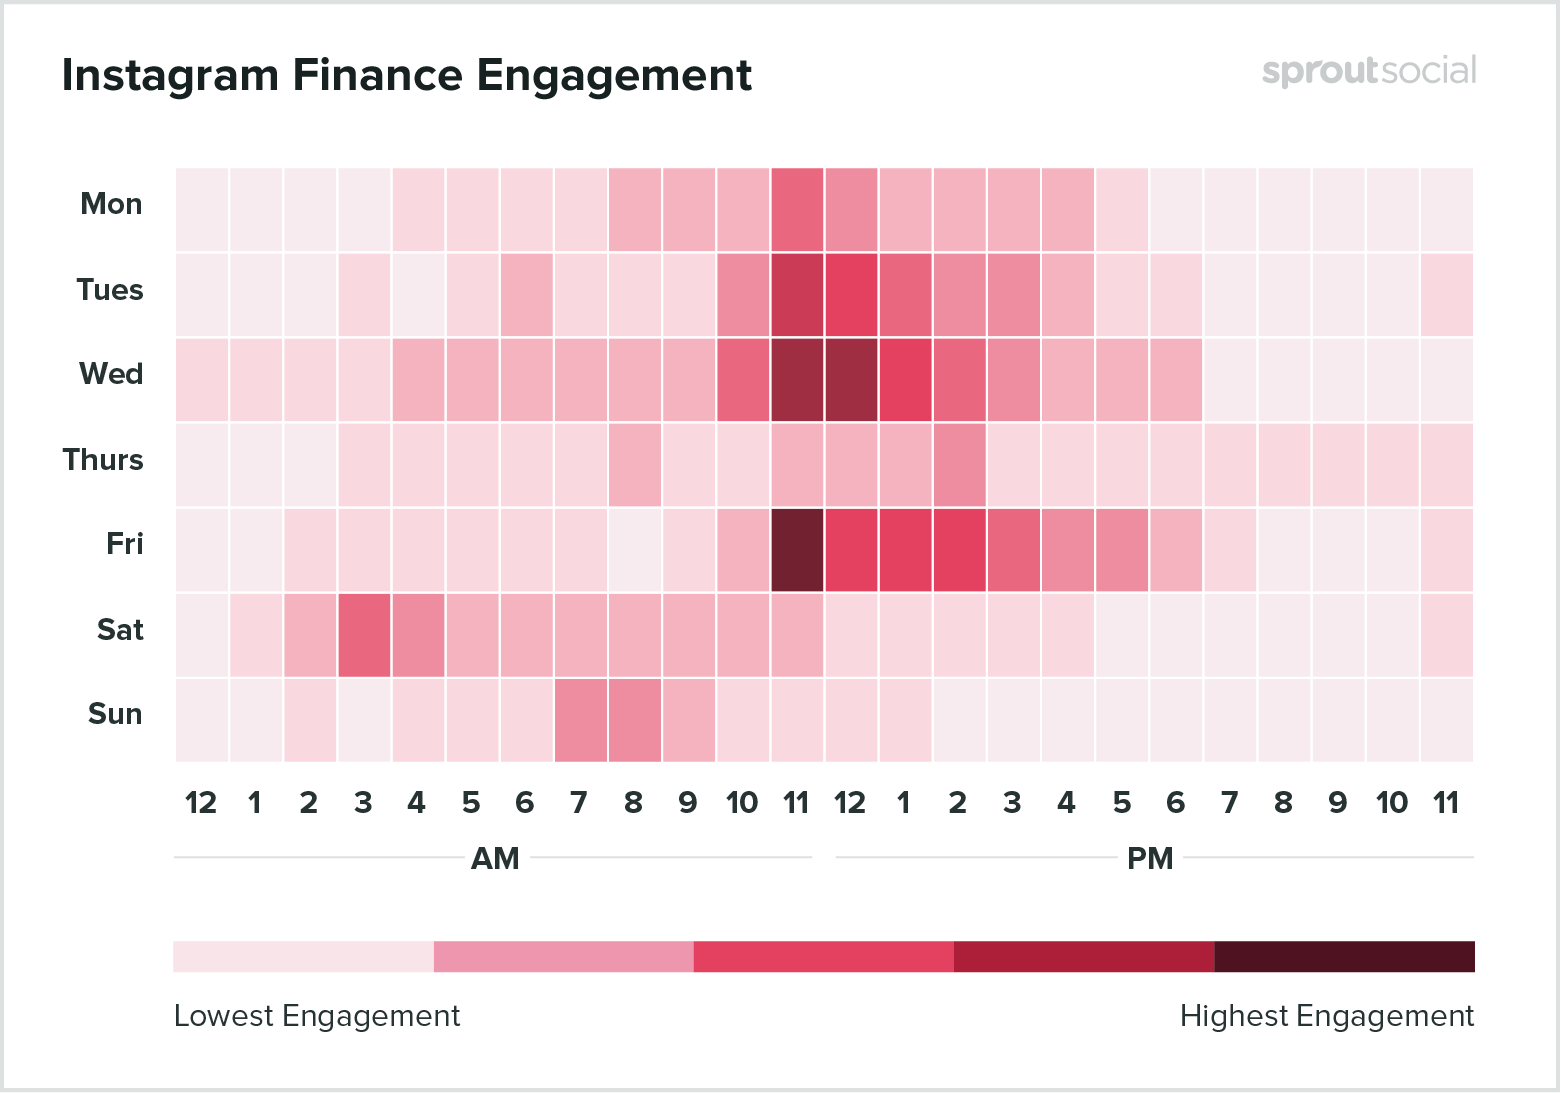 Лучшее время для публикации в Instagram в финансовом секторе - данные на 2020 год